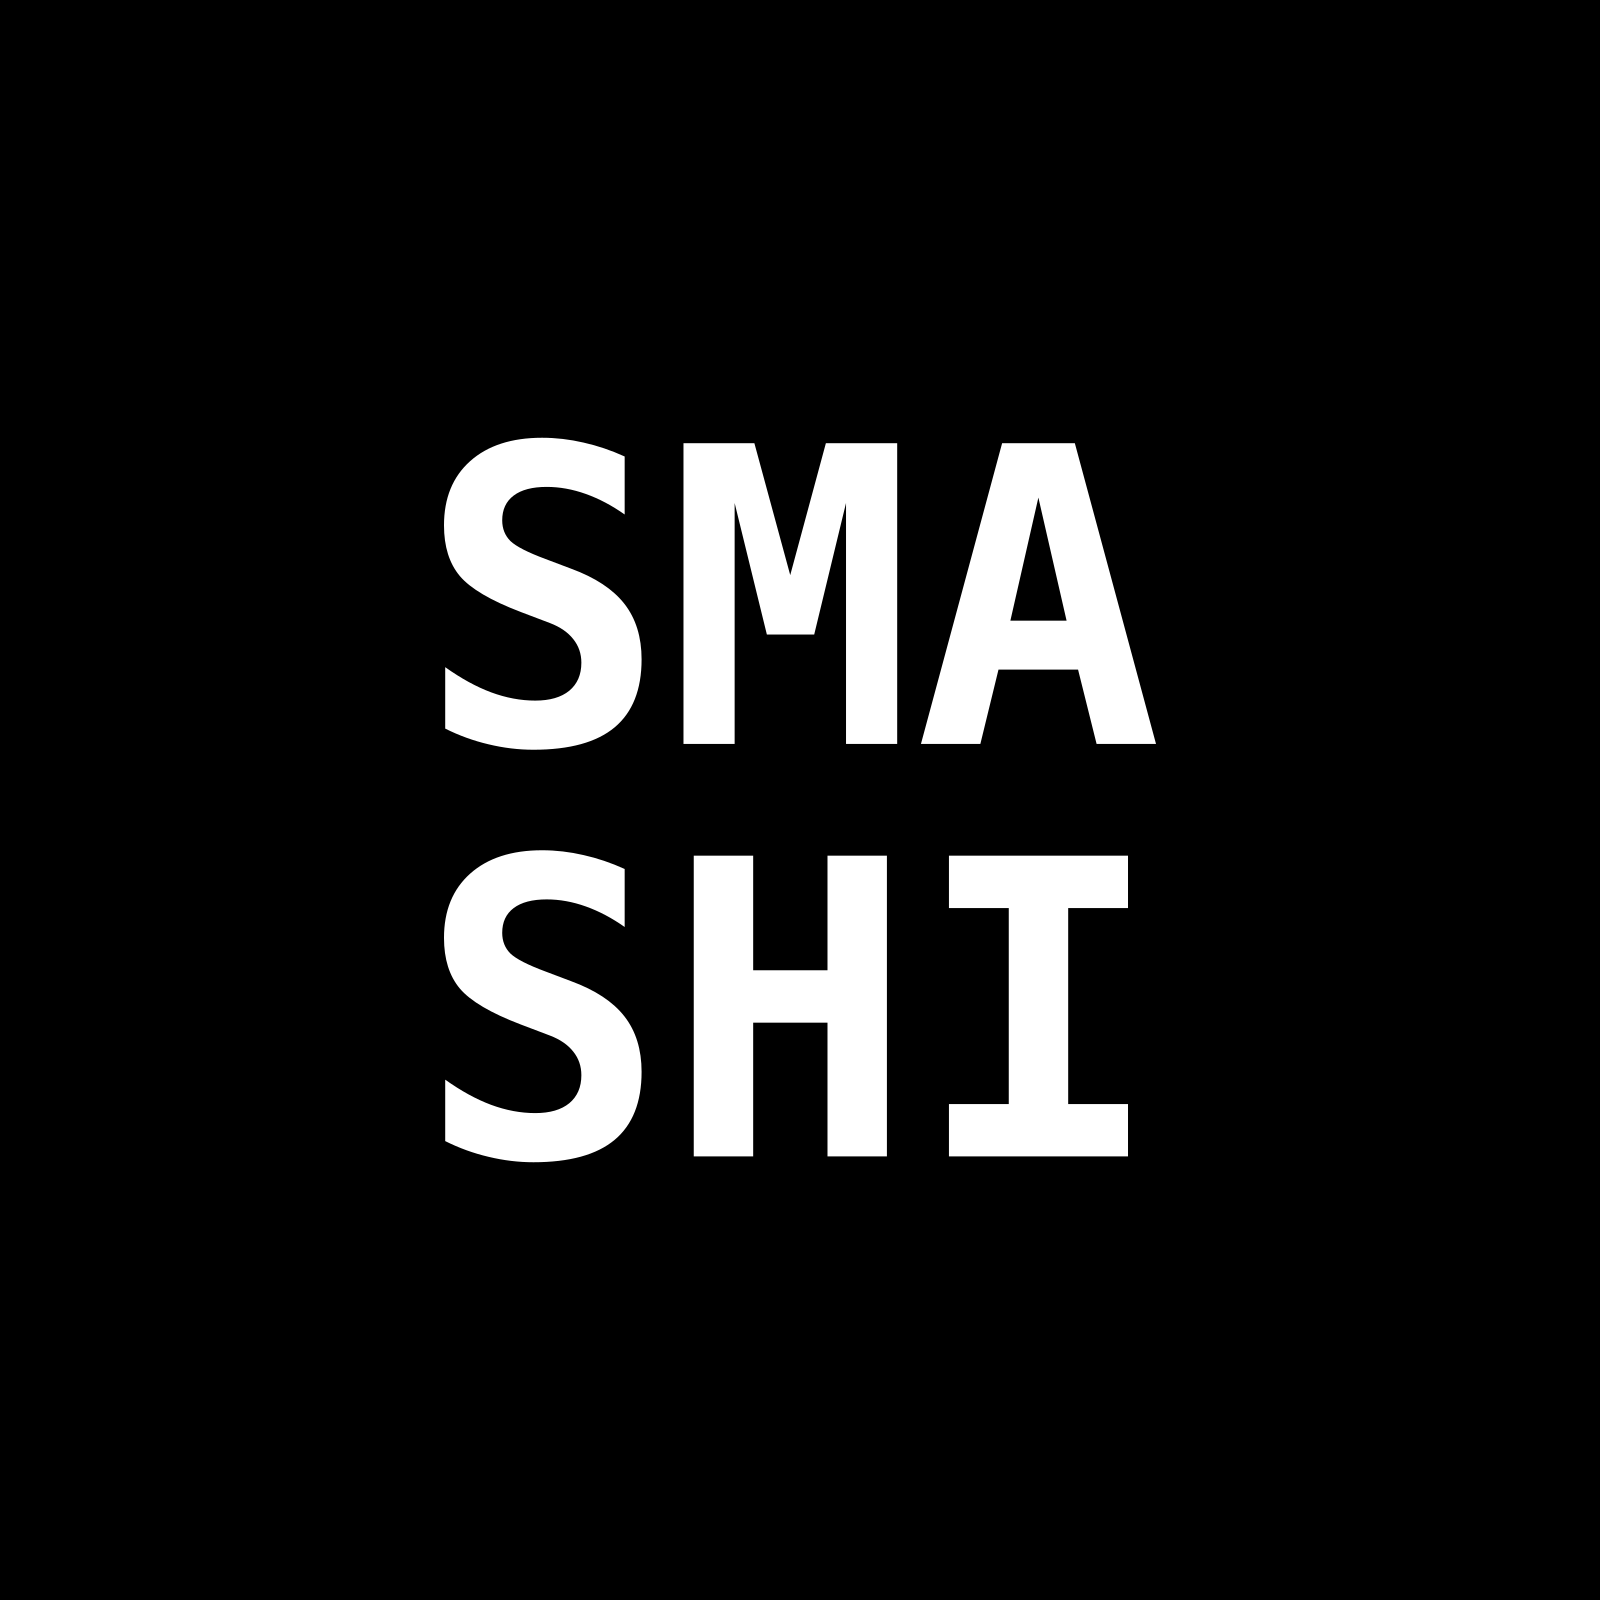 SMASHI project